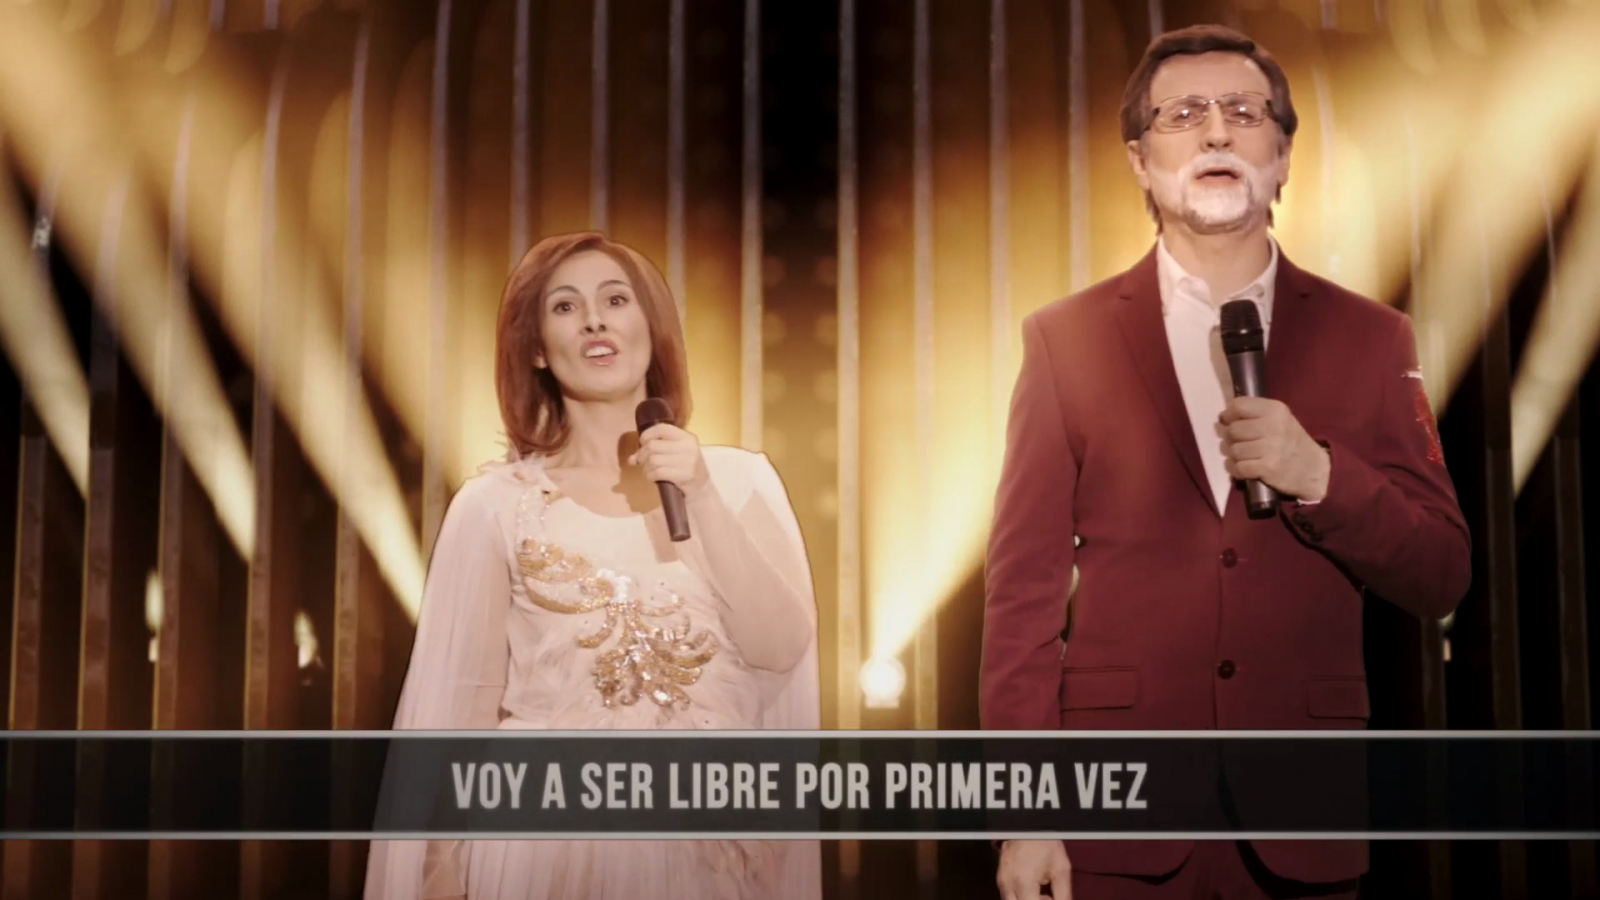 Especial Mota Nochevieja 2018 - Rajoy es Alfred y canta "Tu canción"